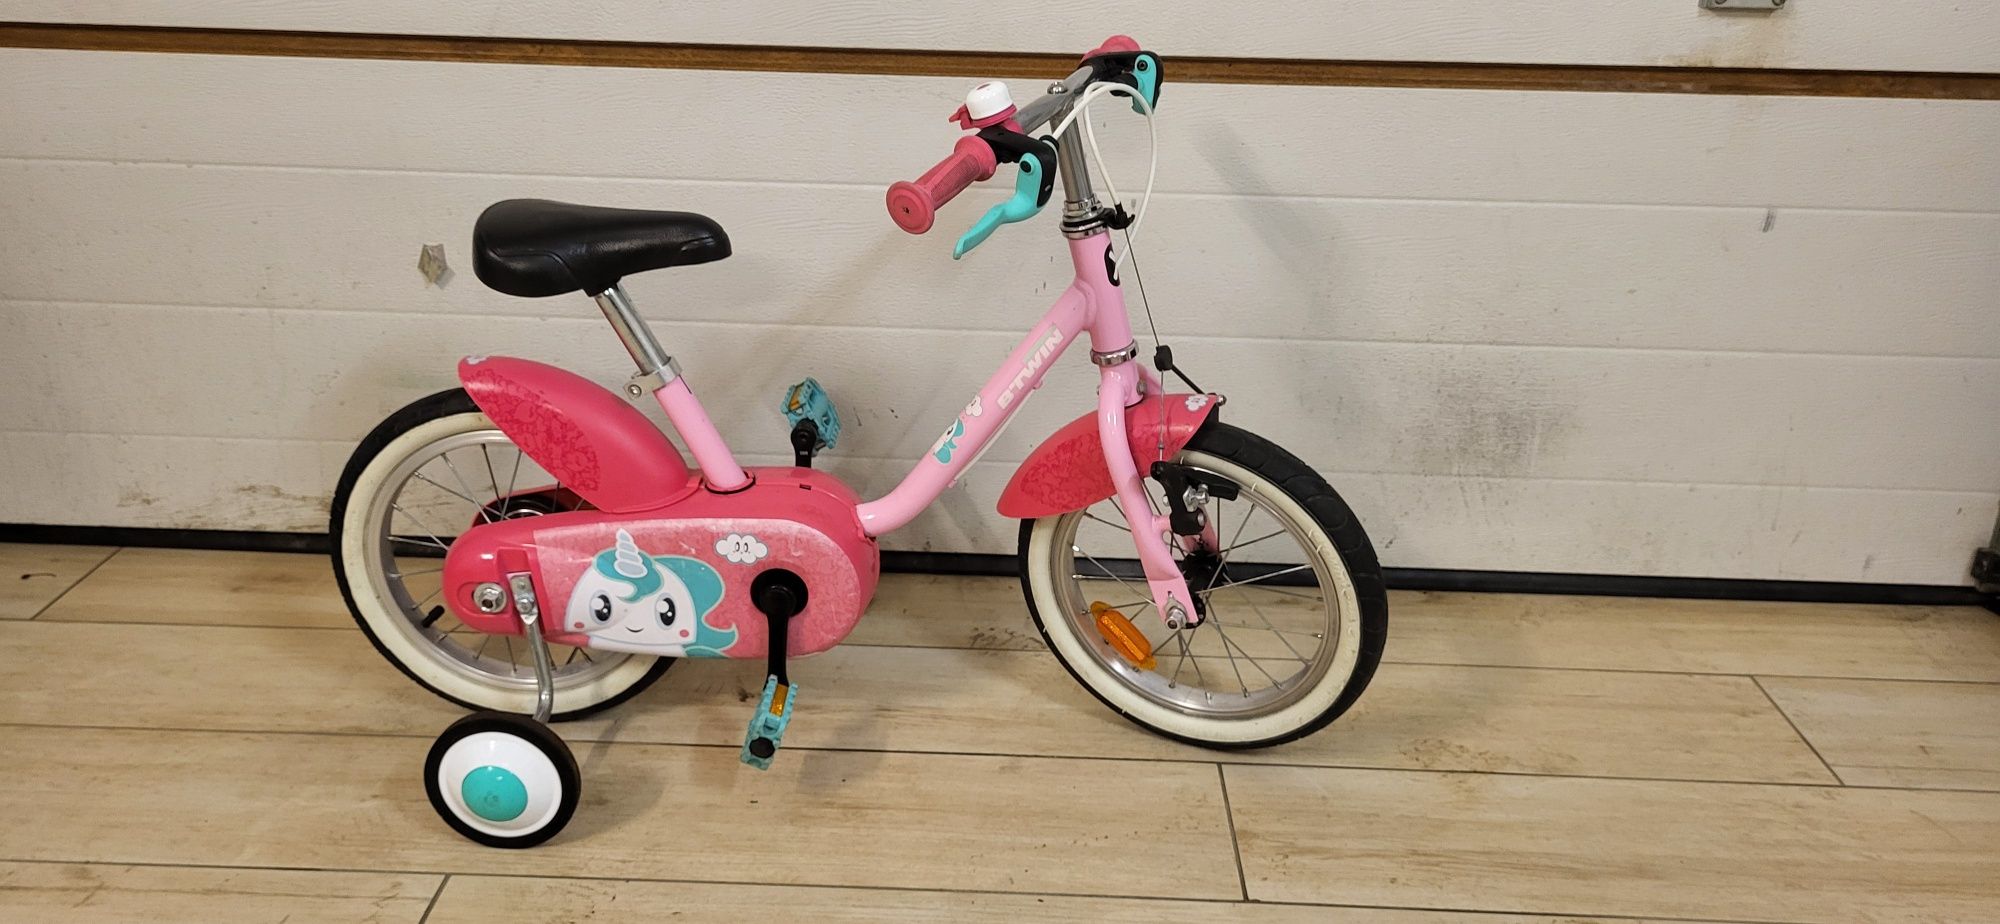 Btwin jednorozec  14" rower dla dziewczynki z kolkami bocznymi